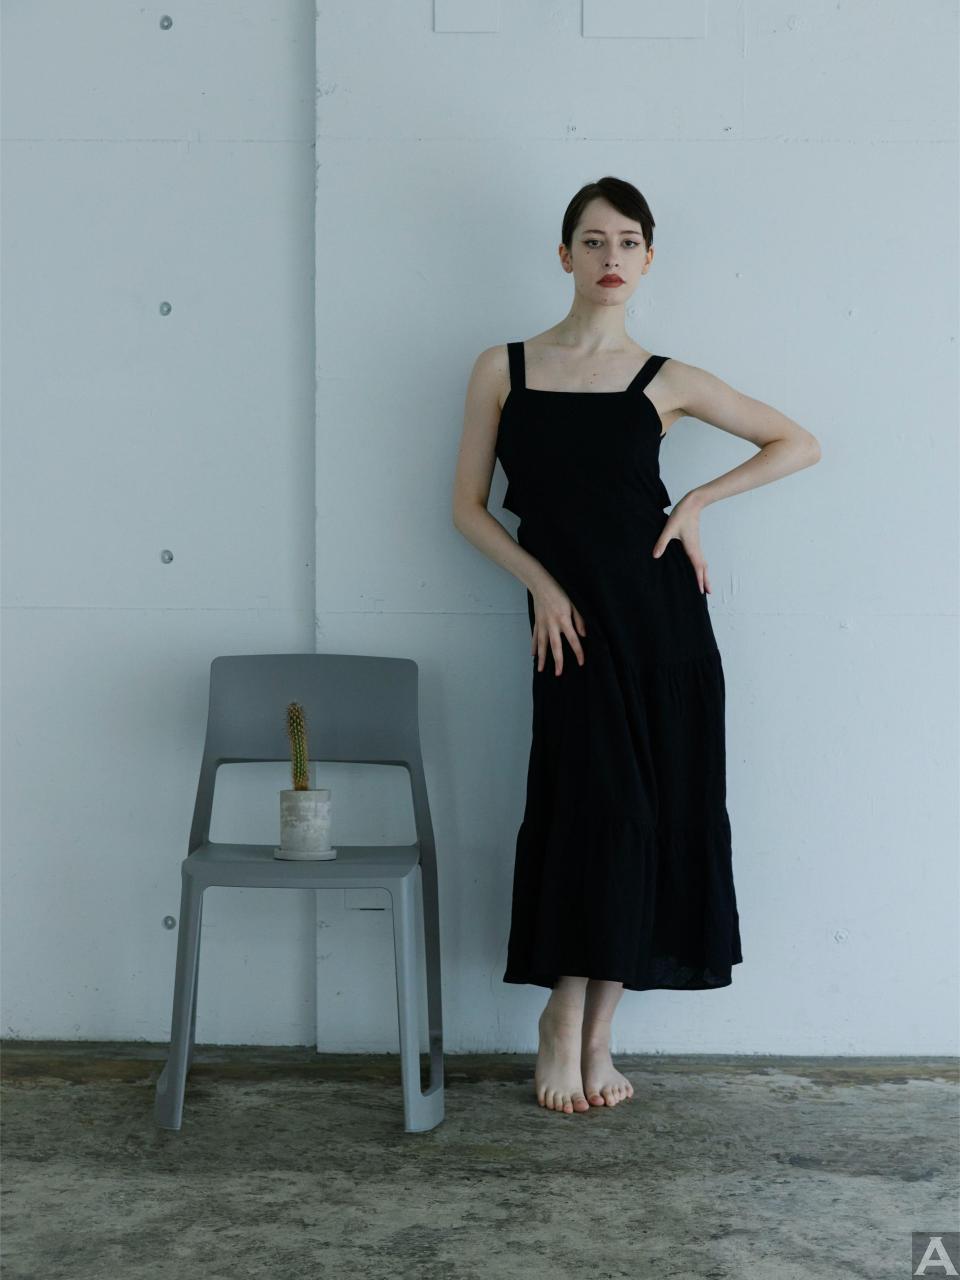 東京外国人モデル事務所アクアモデル所属の白人モデルのセリア